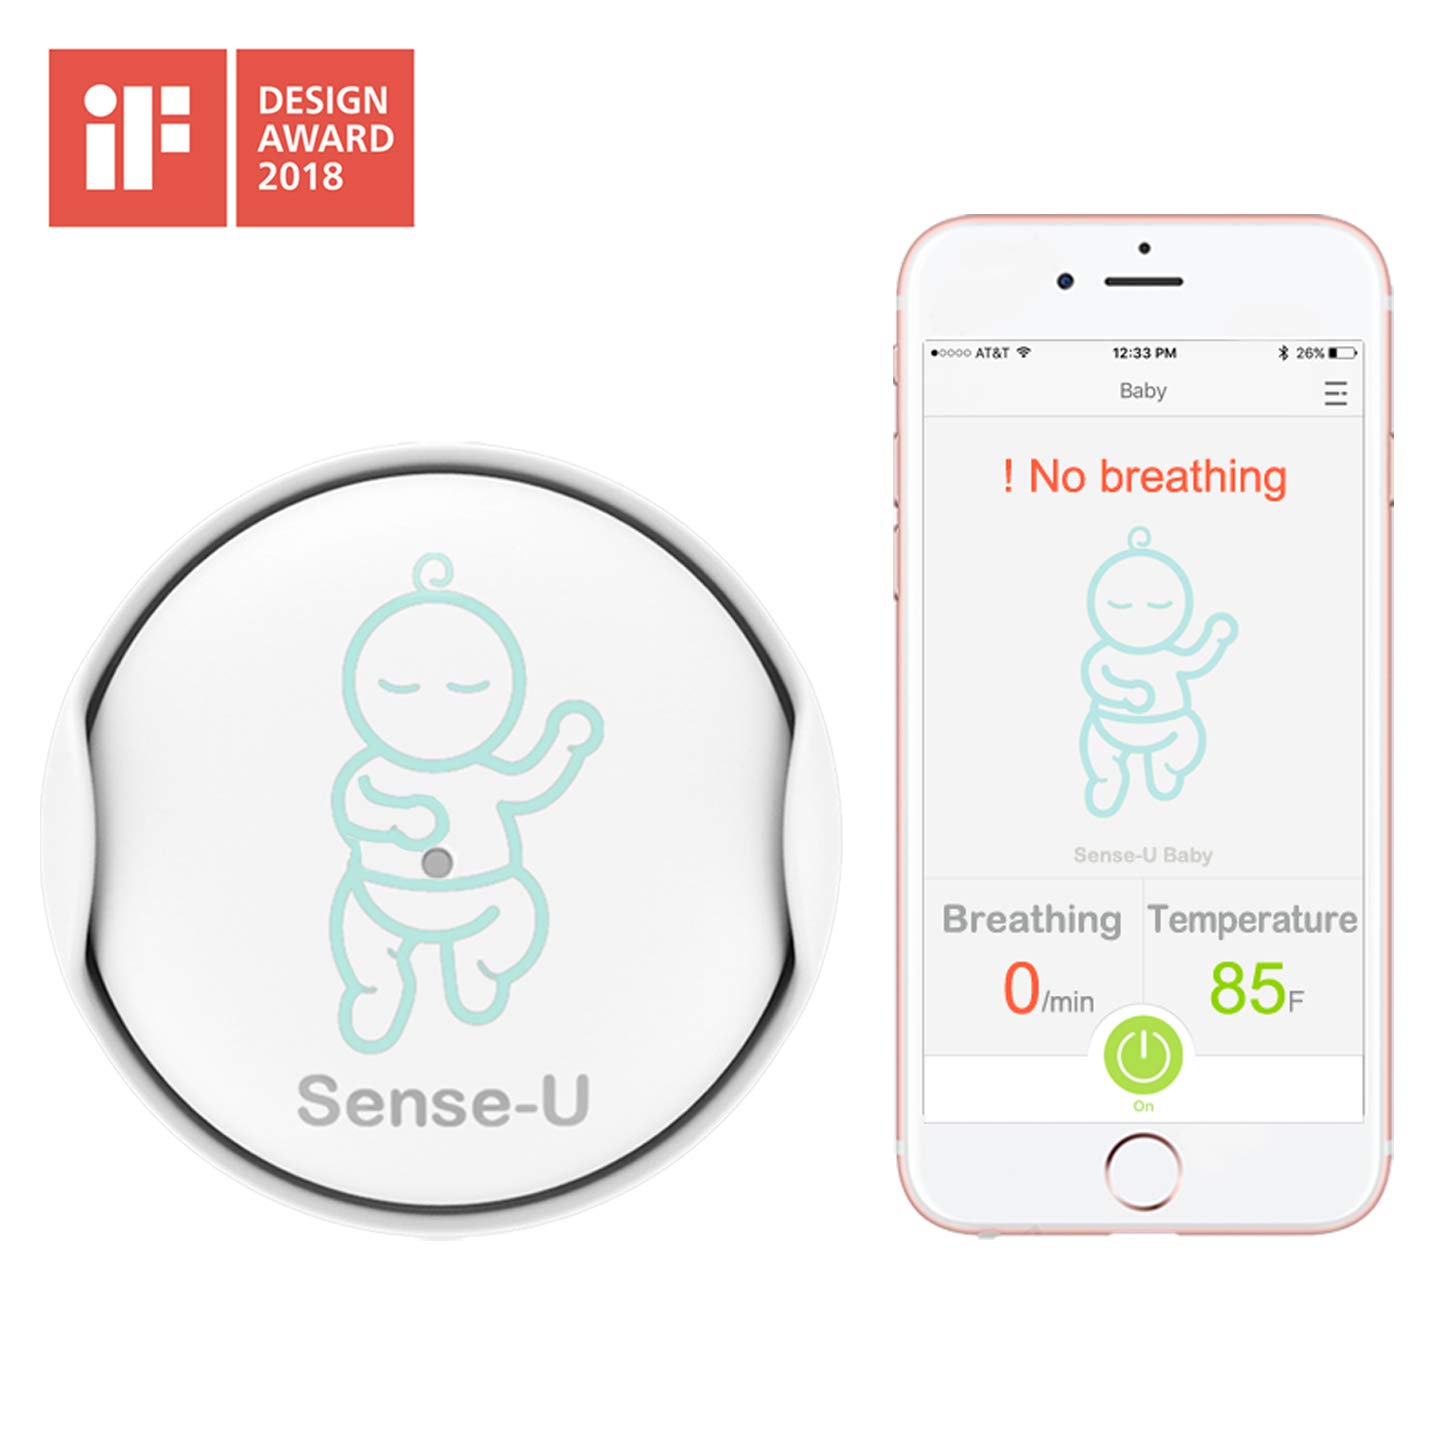 Top 6 Best Baby Breathing Monitors Reviews in 2022 2